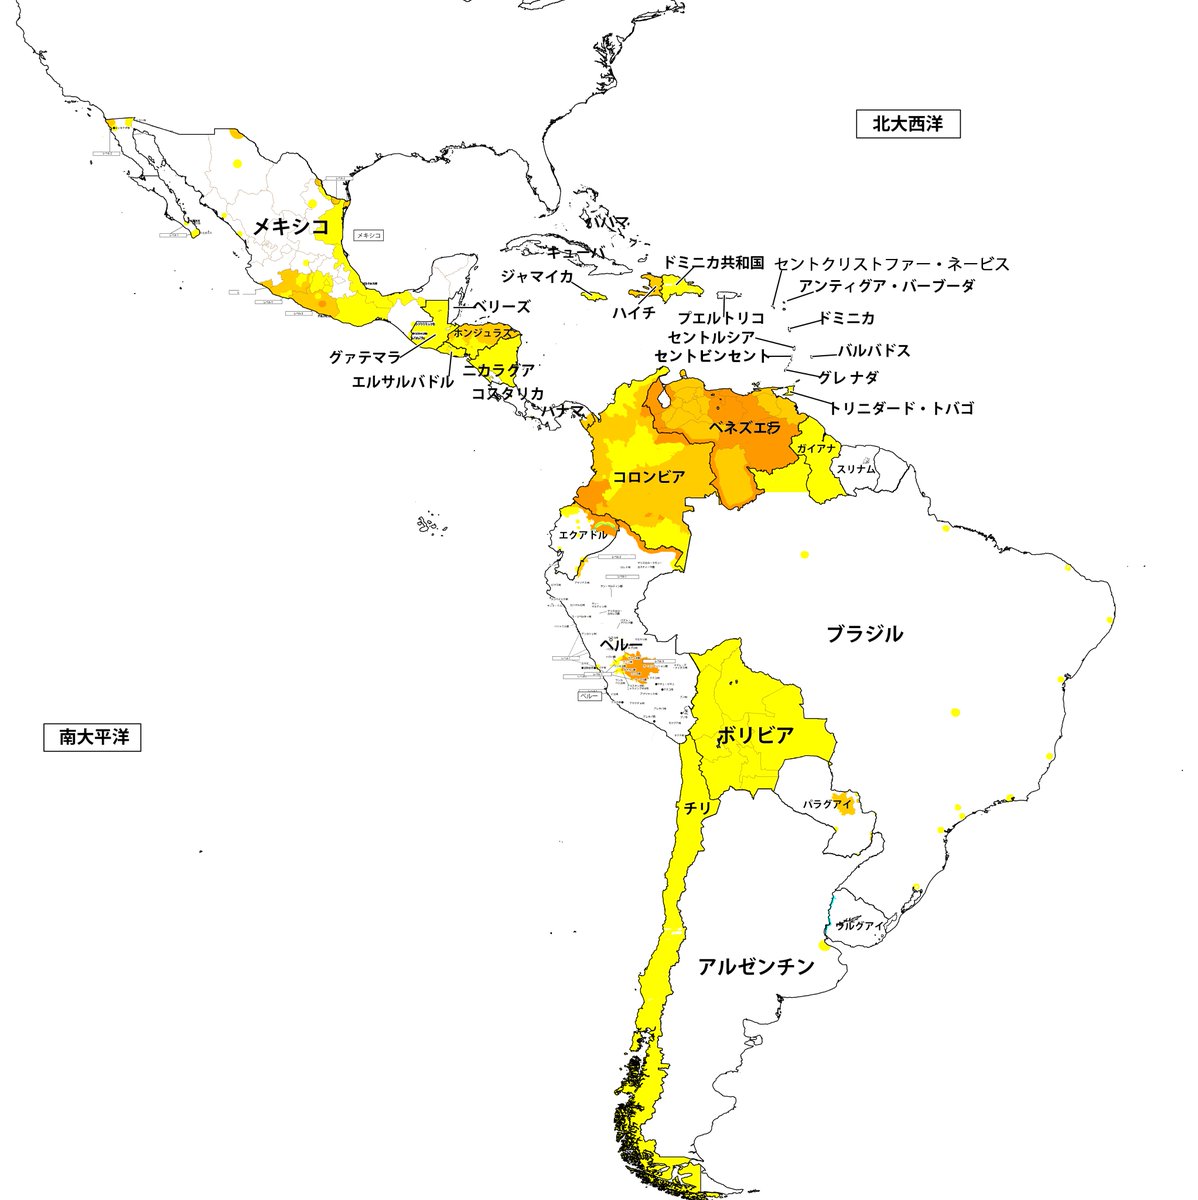 ル スリール ジャポン Ojvs 年2月5日現在の外務省が公開する地域別 安全レベル 中南米 比較的 中南米 は他地域と比較し 犯罪 が多いイメージでしたが 安全レベル にはあまり関係ないようです